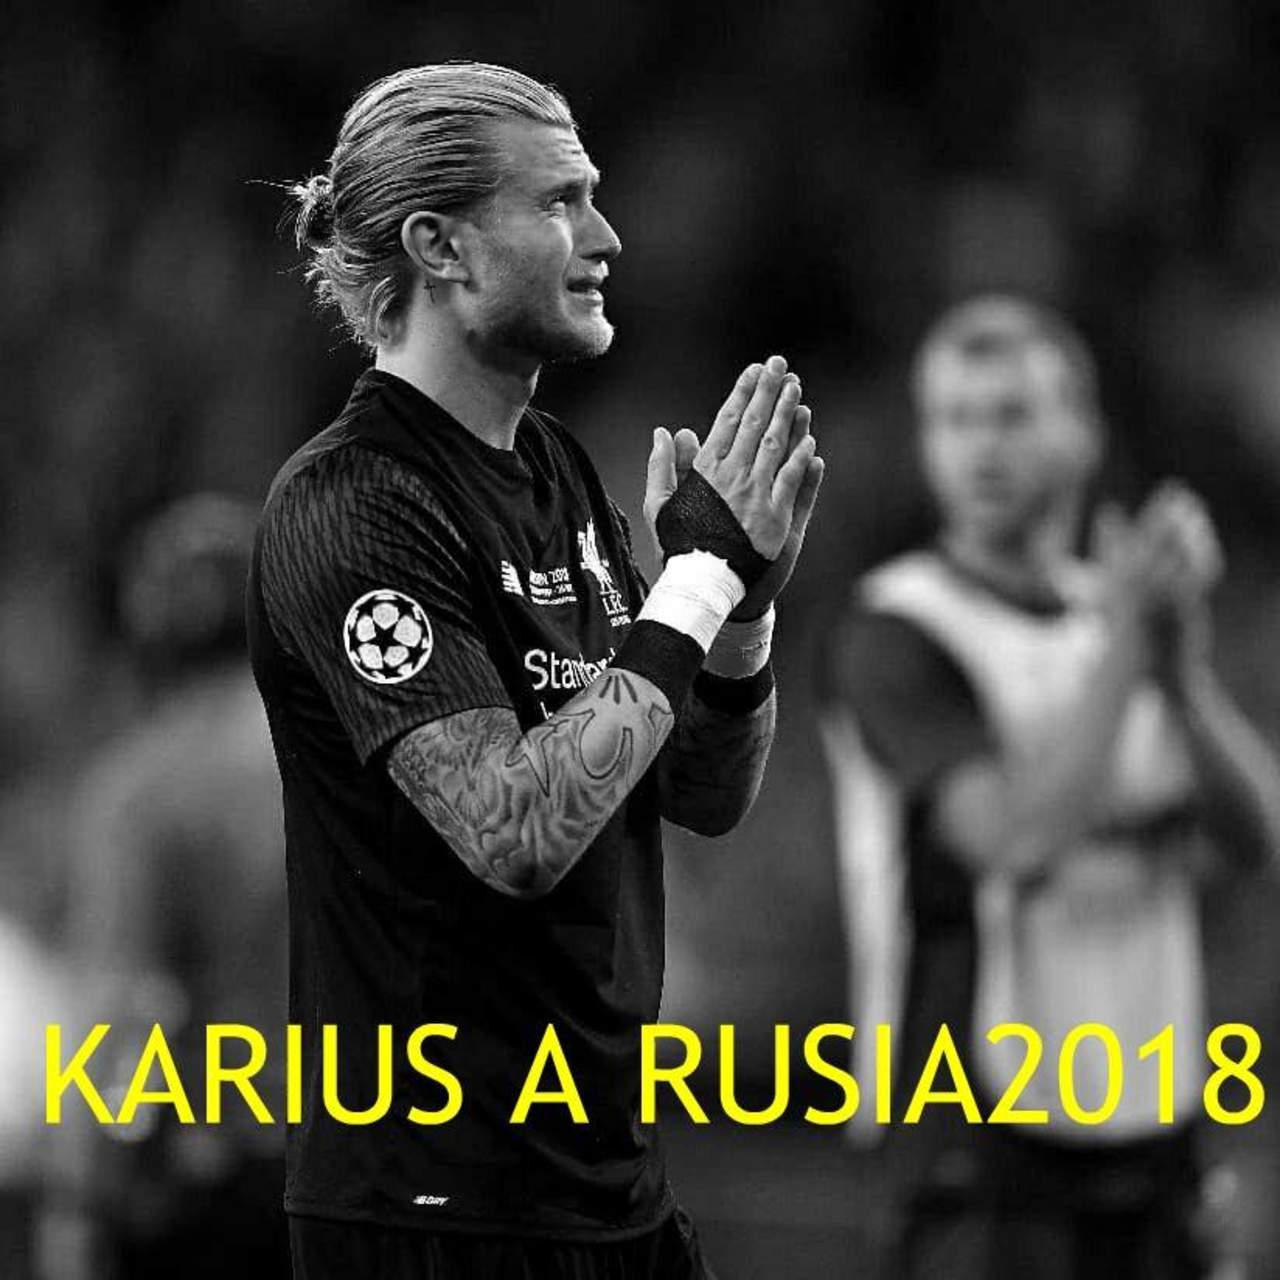 Piden en redes cadena de oración para que Karius sea el guardameta de Alemania en el mundial. Noticias en tiempo real